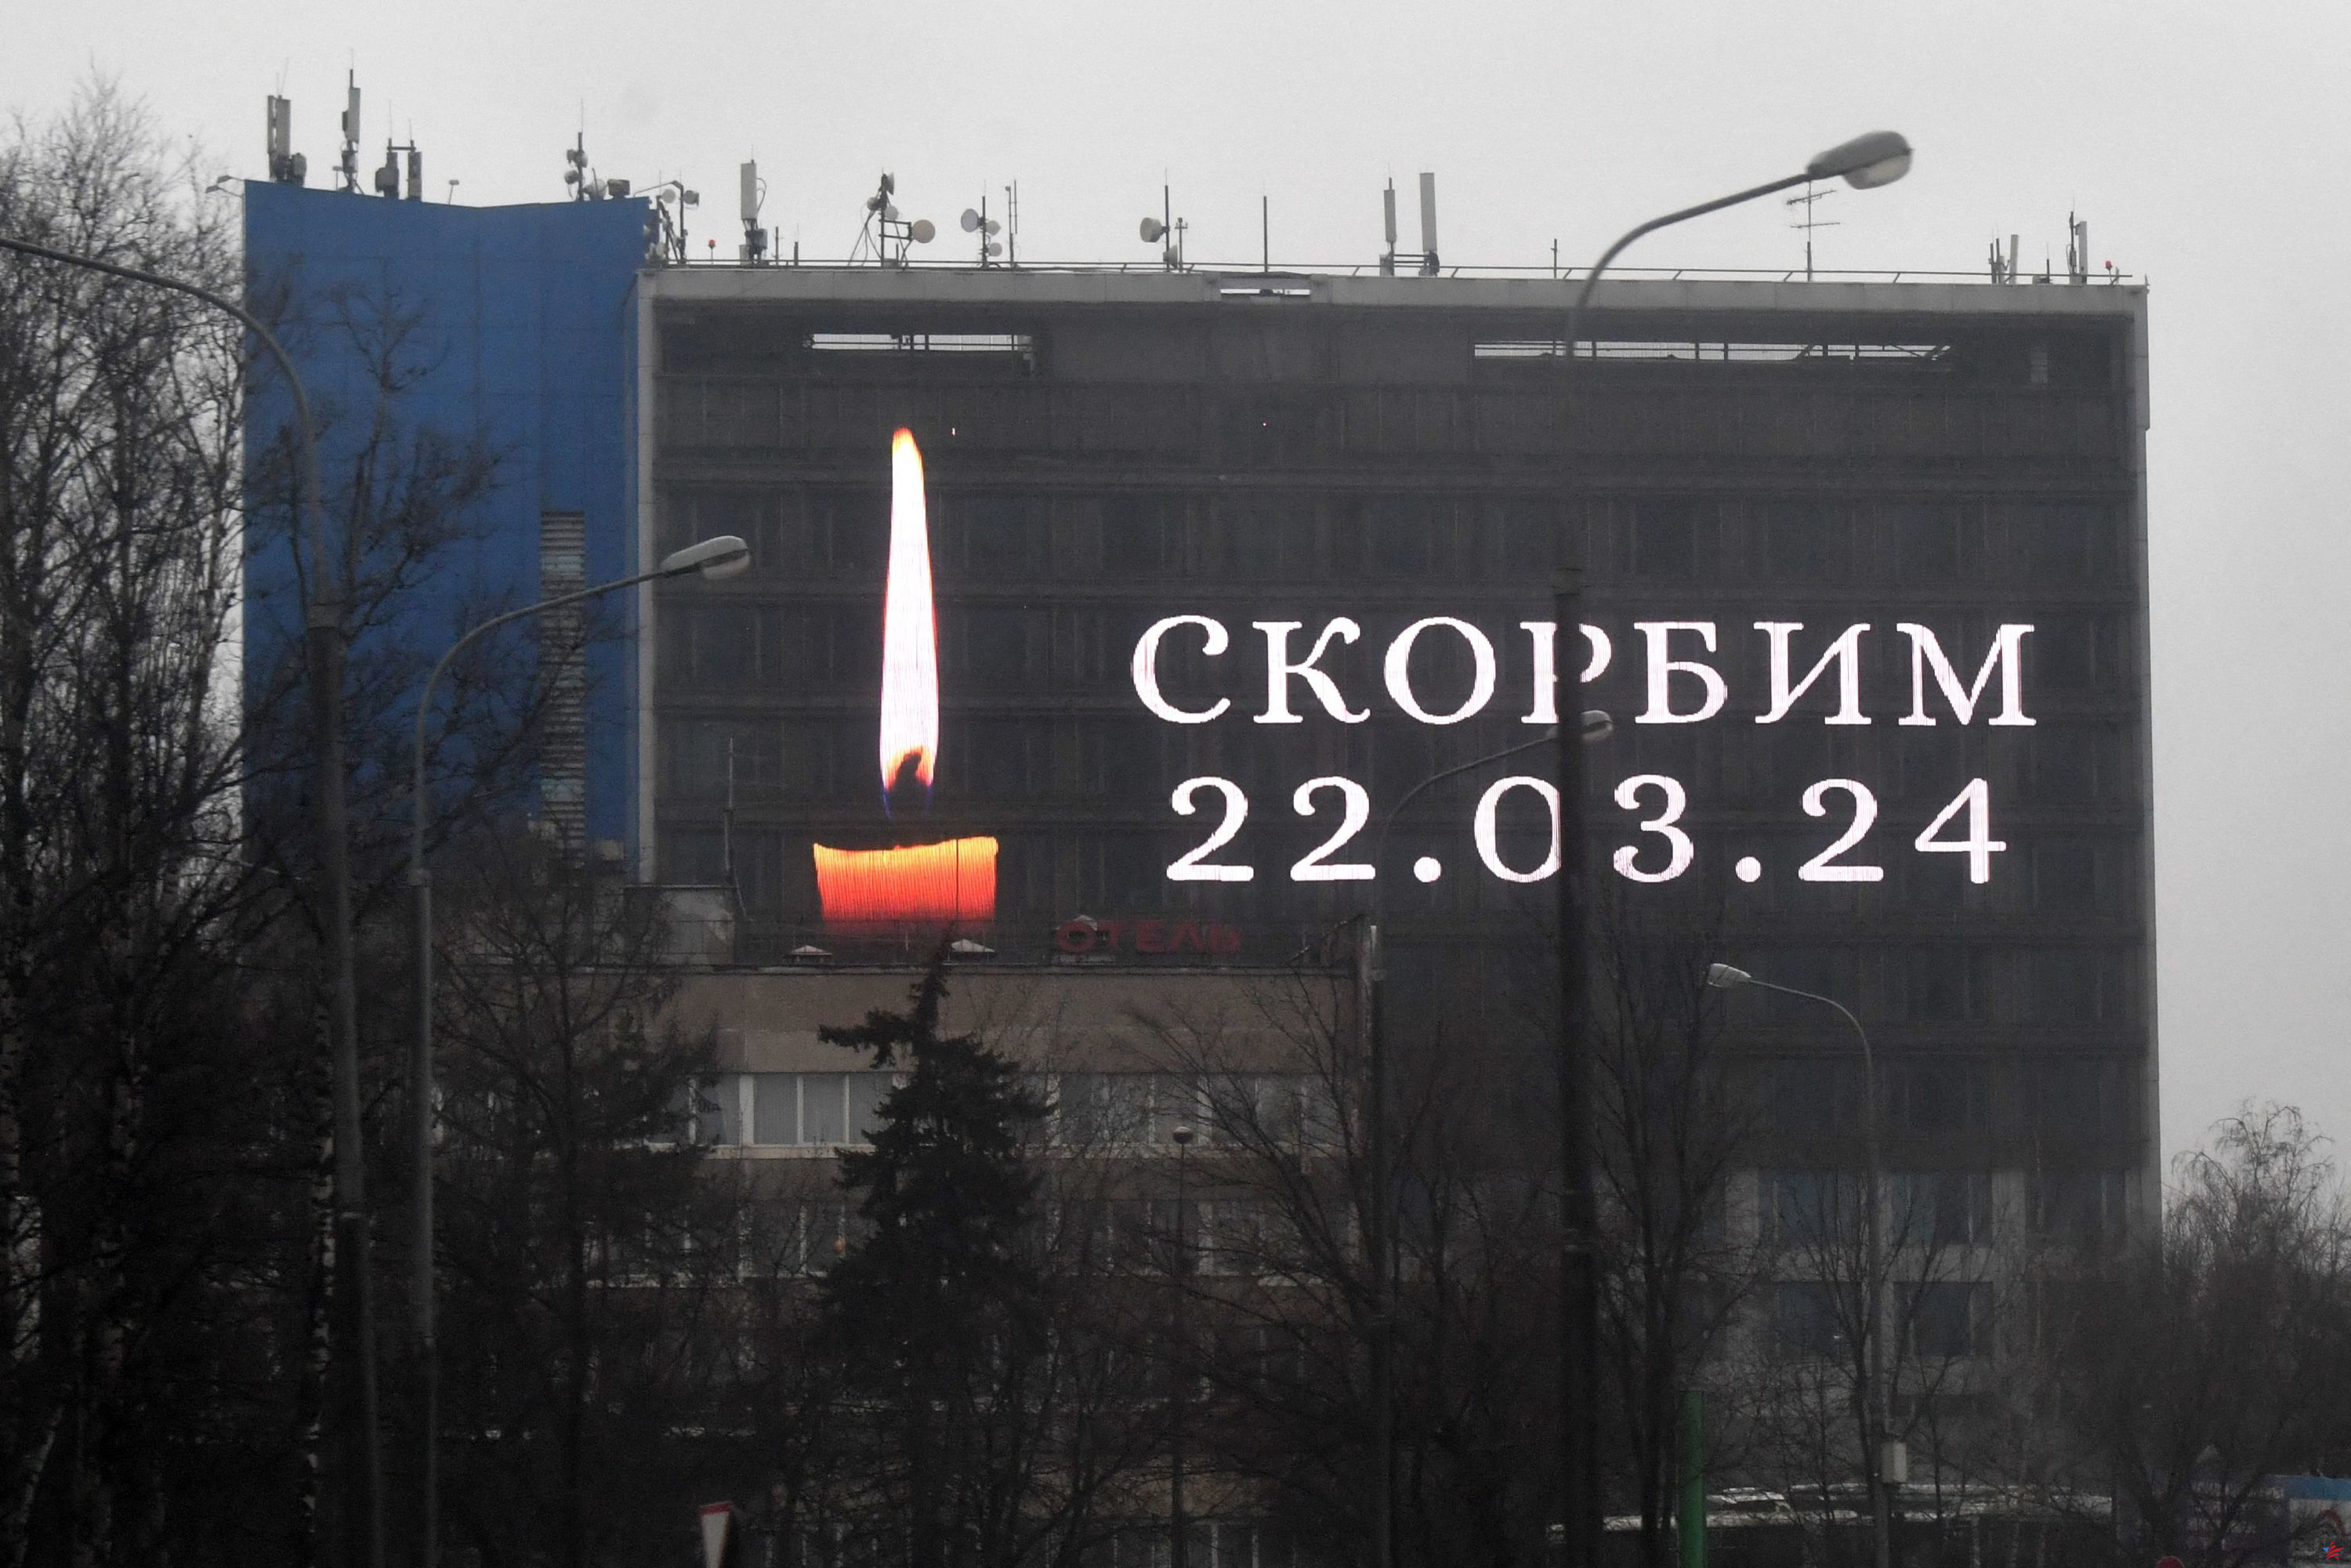 Ataque en Moscú: a pesar de la brecha diplomática con Rusia, el mundo occidental expresa sus condolencias